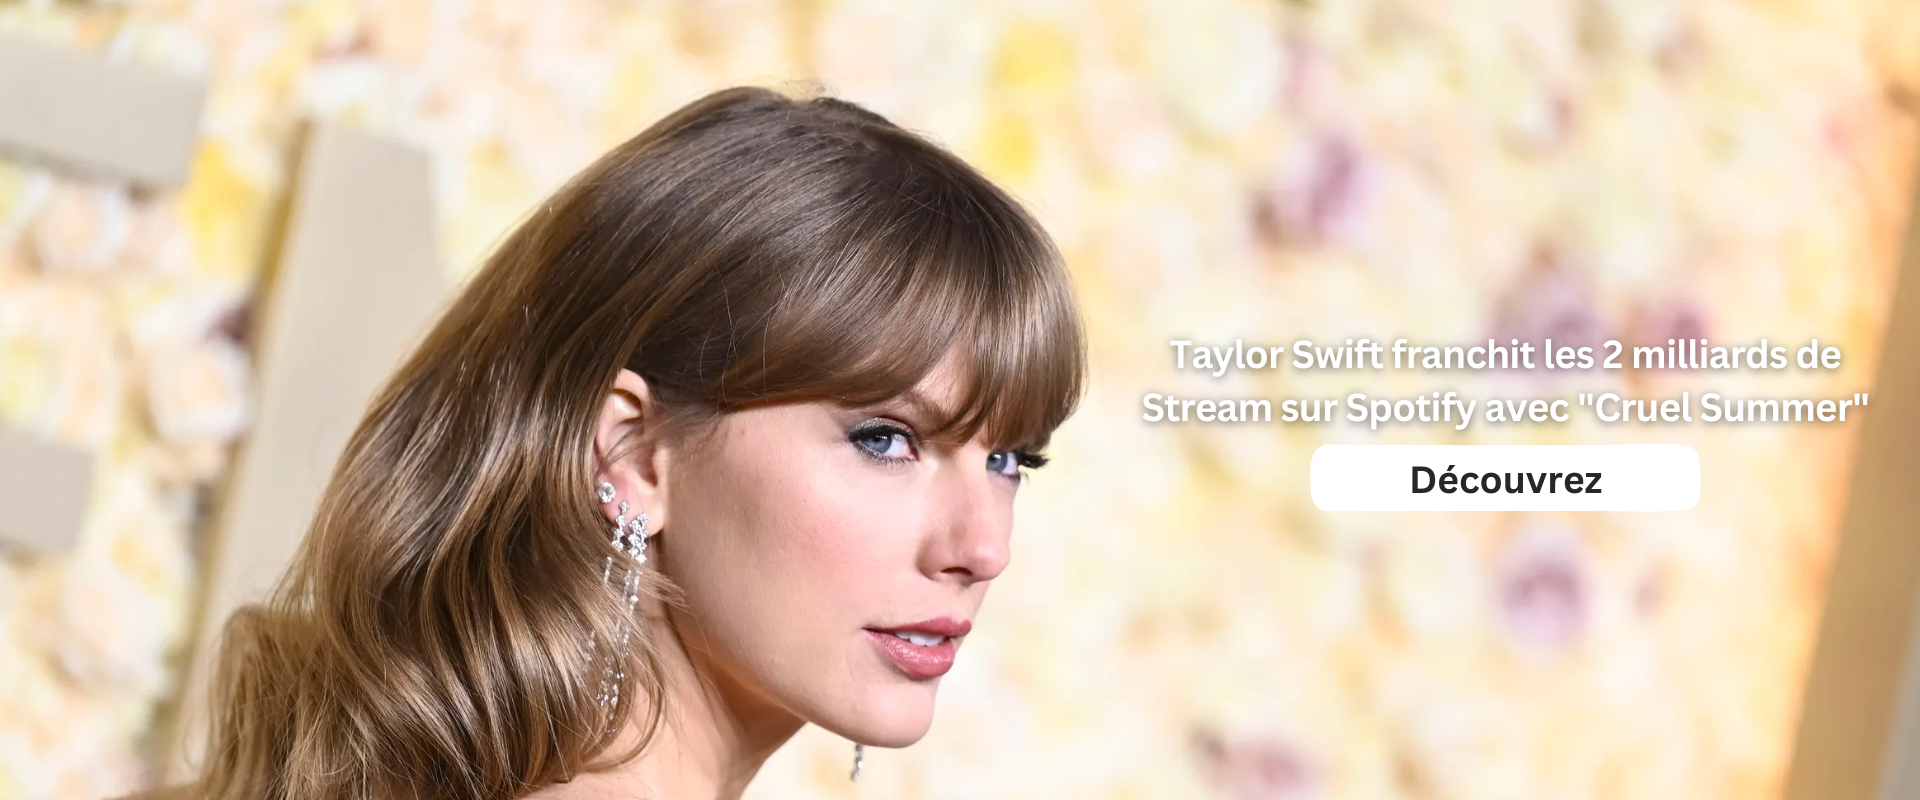 Taylor Swift franchit les 2 milliards de Stream sur Spotify avec "Cruel Summer"